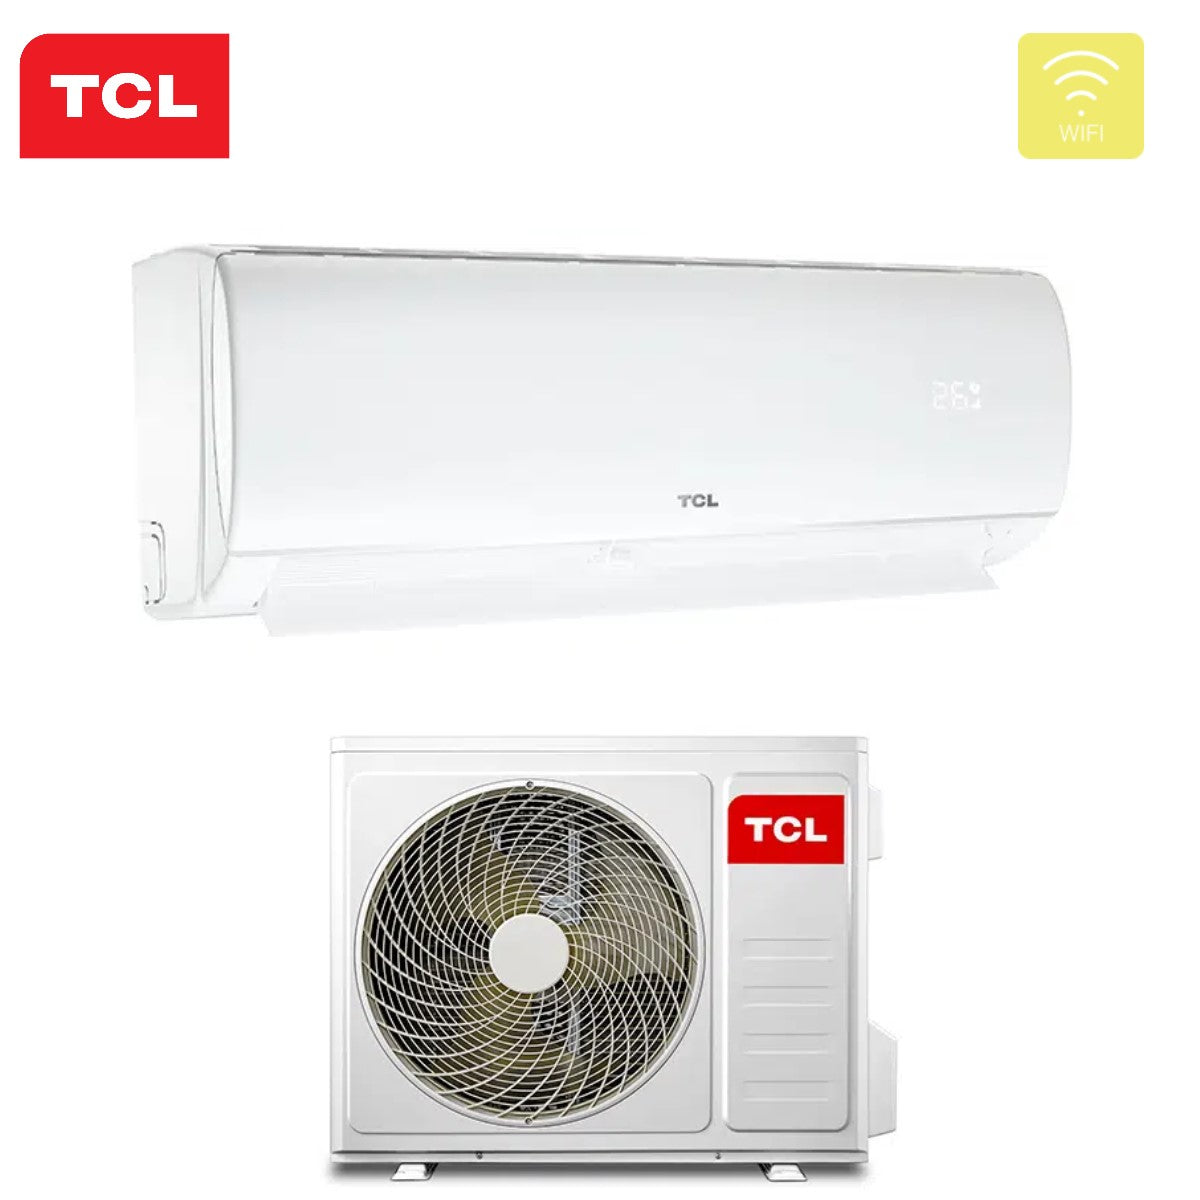 immagine-4-tcl-climatizzatore-condizionatore-tcl-inverter-serie-elite-f1-24000-btu-s24f1s0t-r-32-wi-fi-integrato-classe-aa